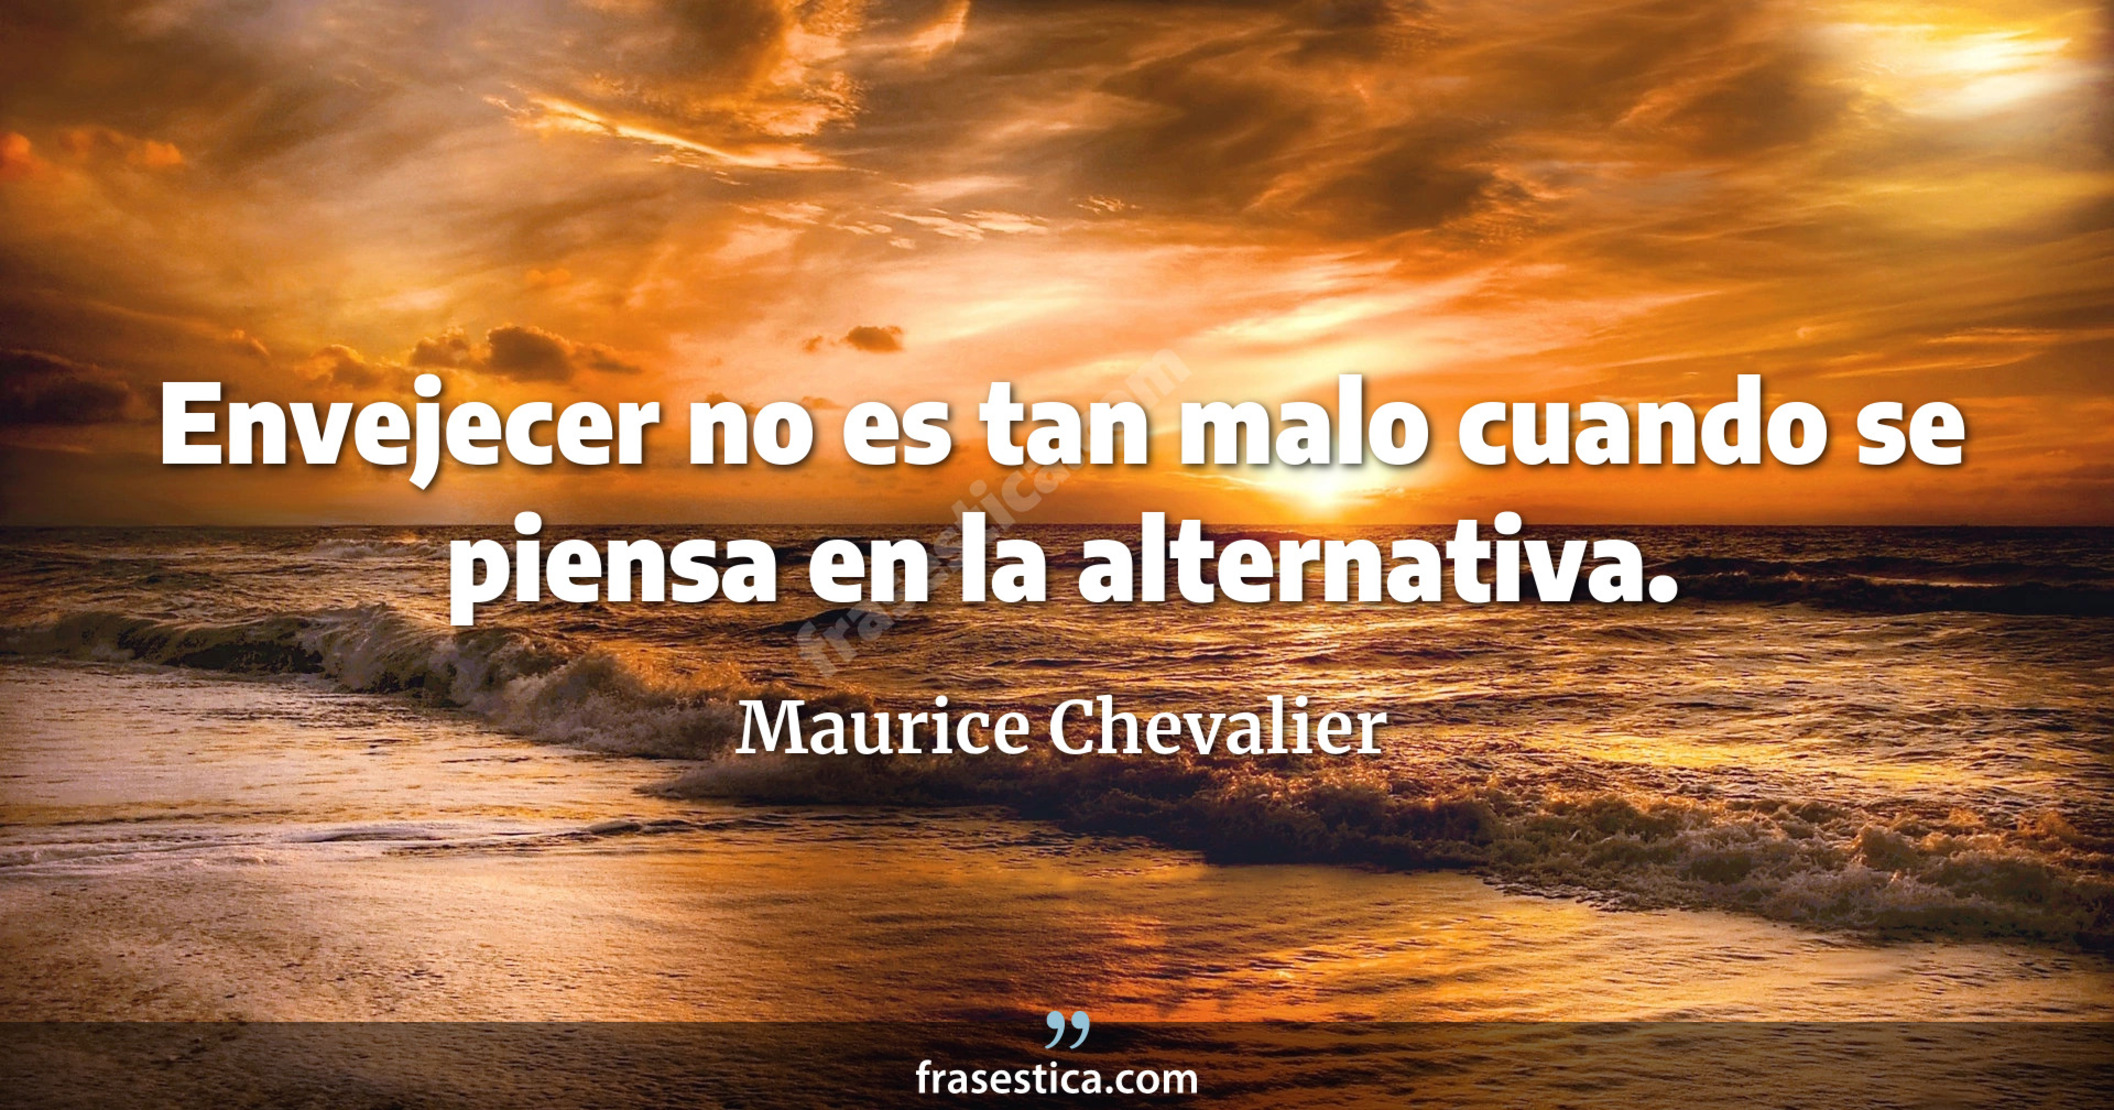 Envejecer no es tan malo cuando se piensa en la alternativa. - Maurice Chevalier